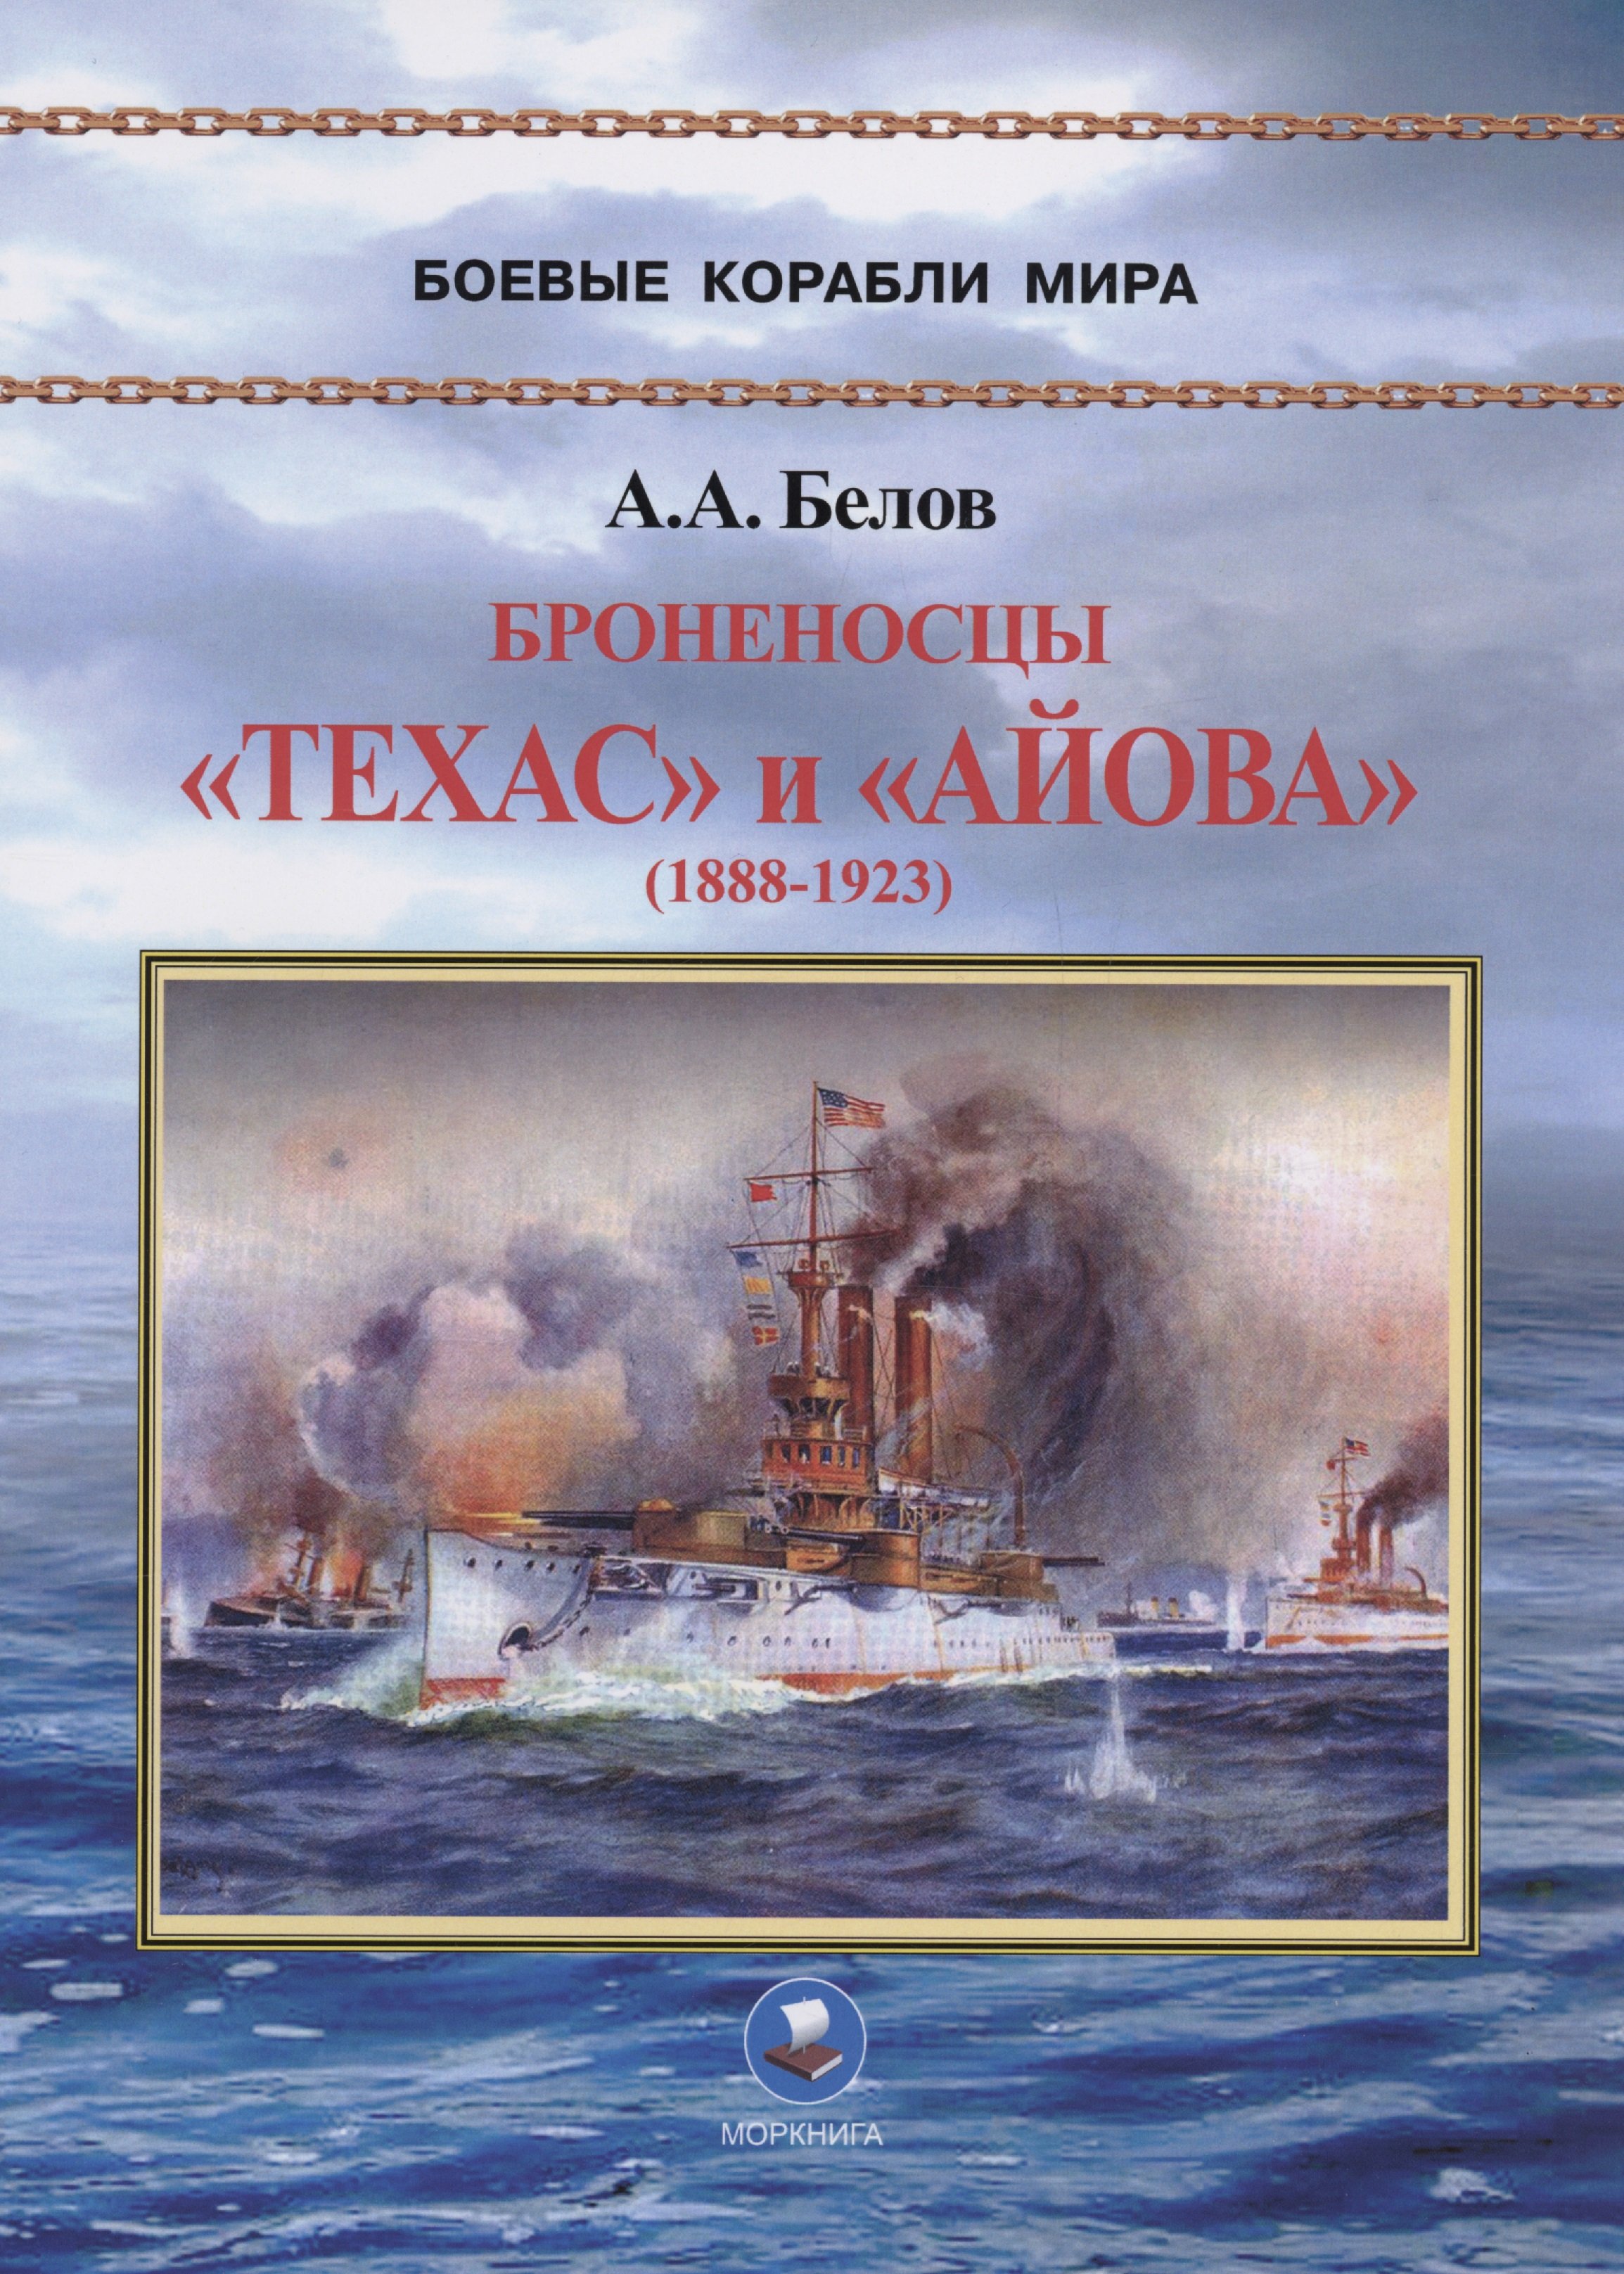 Белов А.А. - Броненосцы "Техас" и "Айова" (1888-1923)